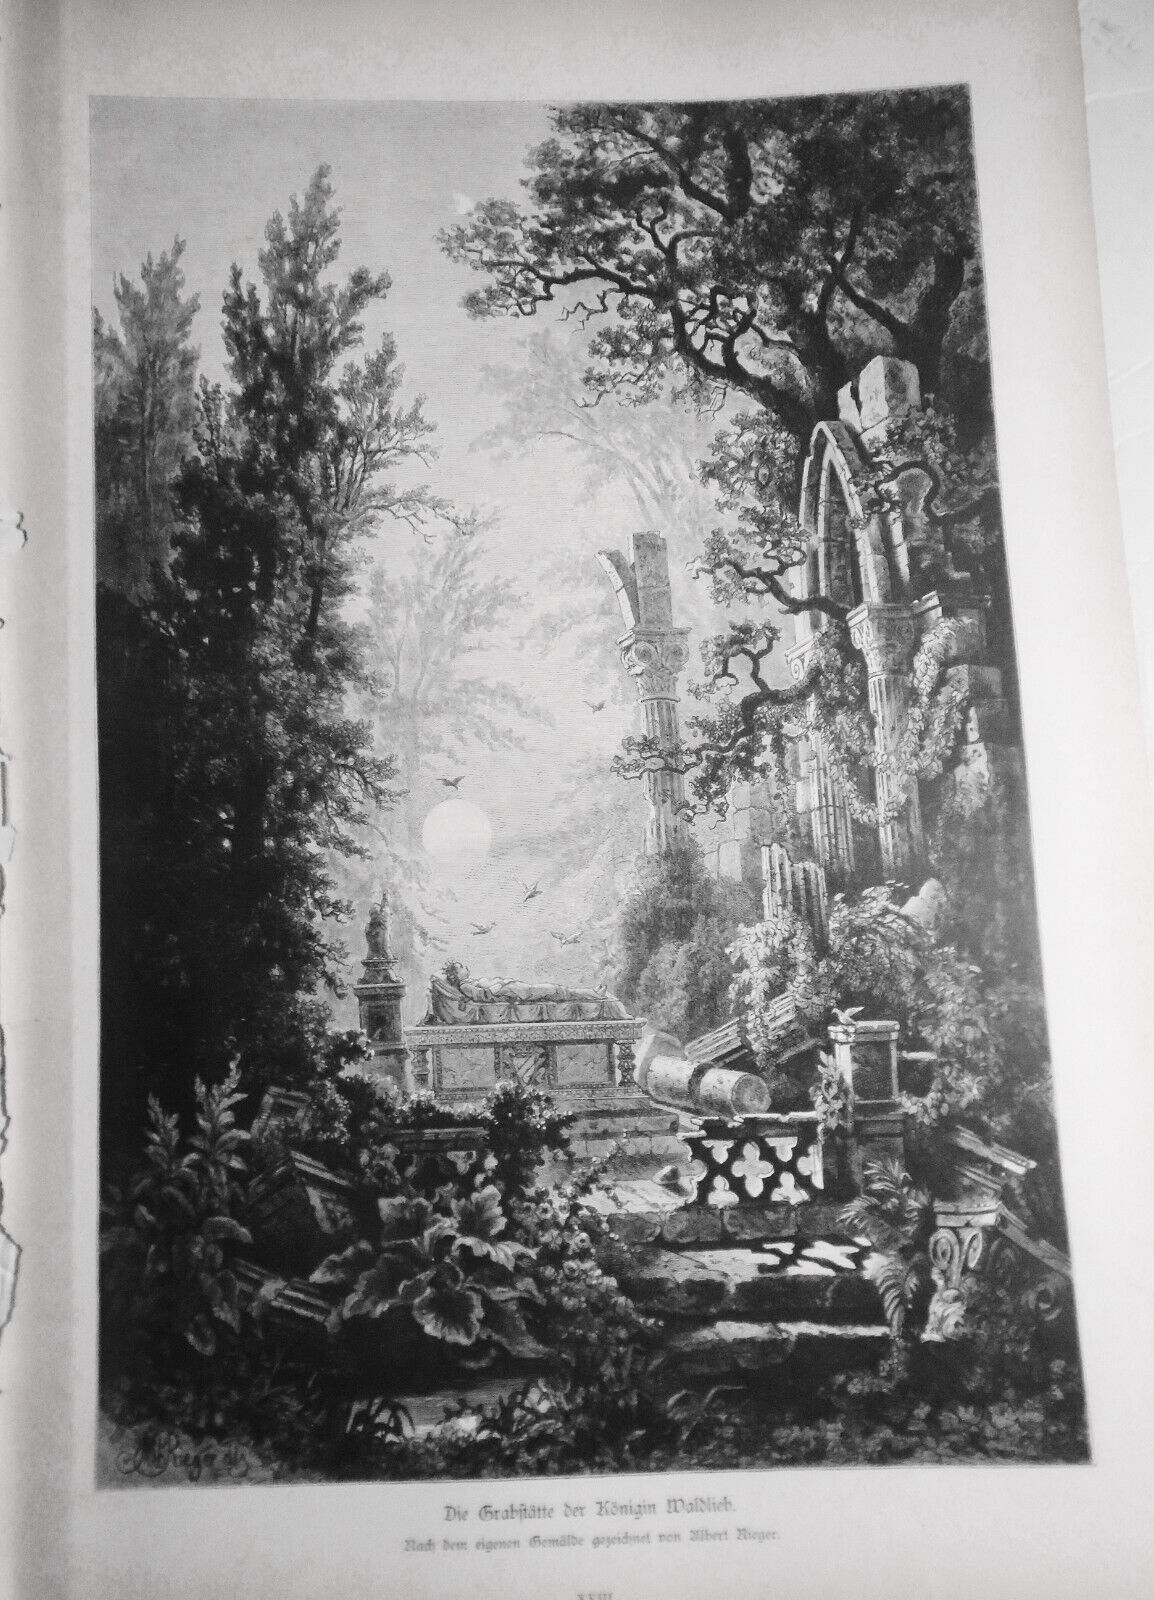 Die Grabstätte der Königin Waldlieb, by Albert Rieger  --  1884 Original